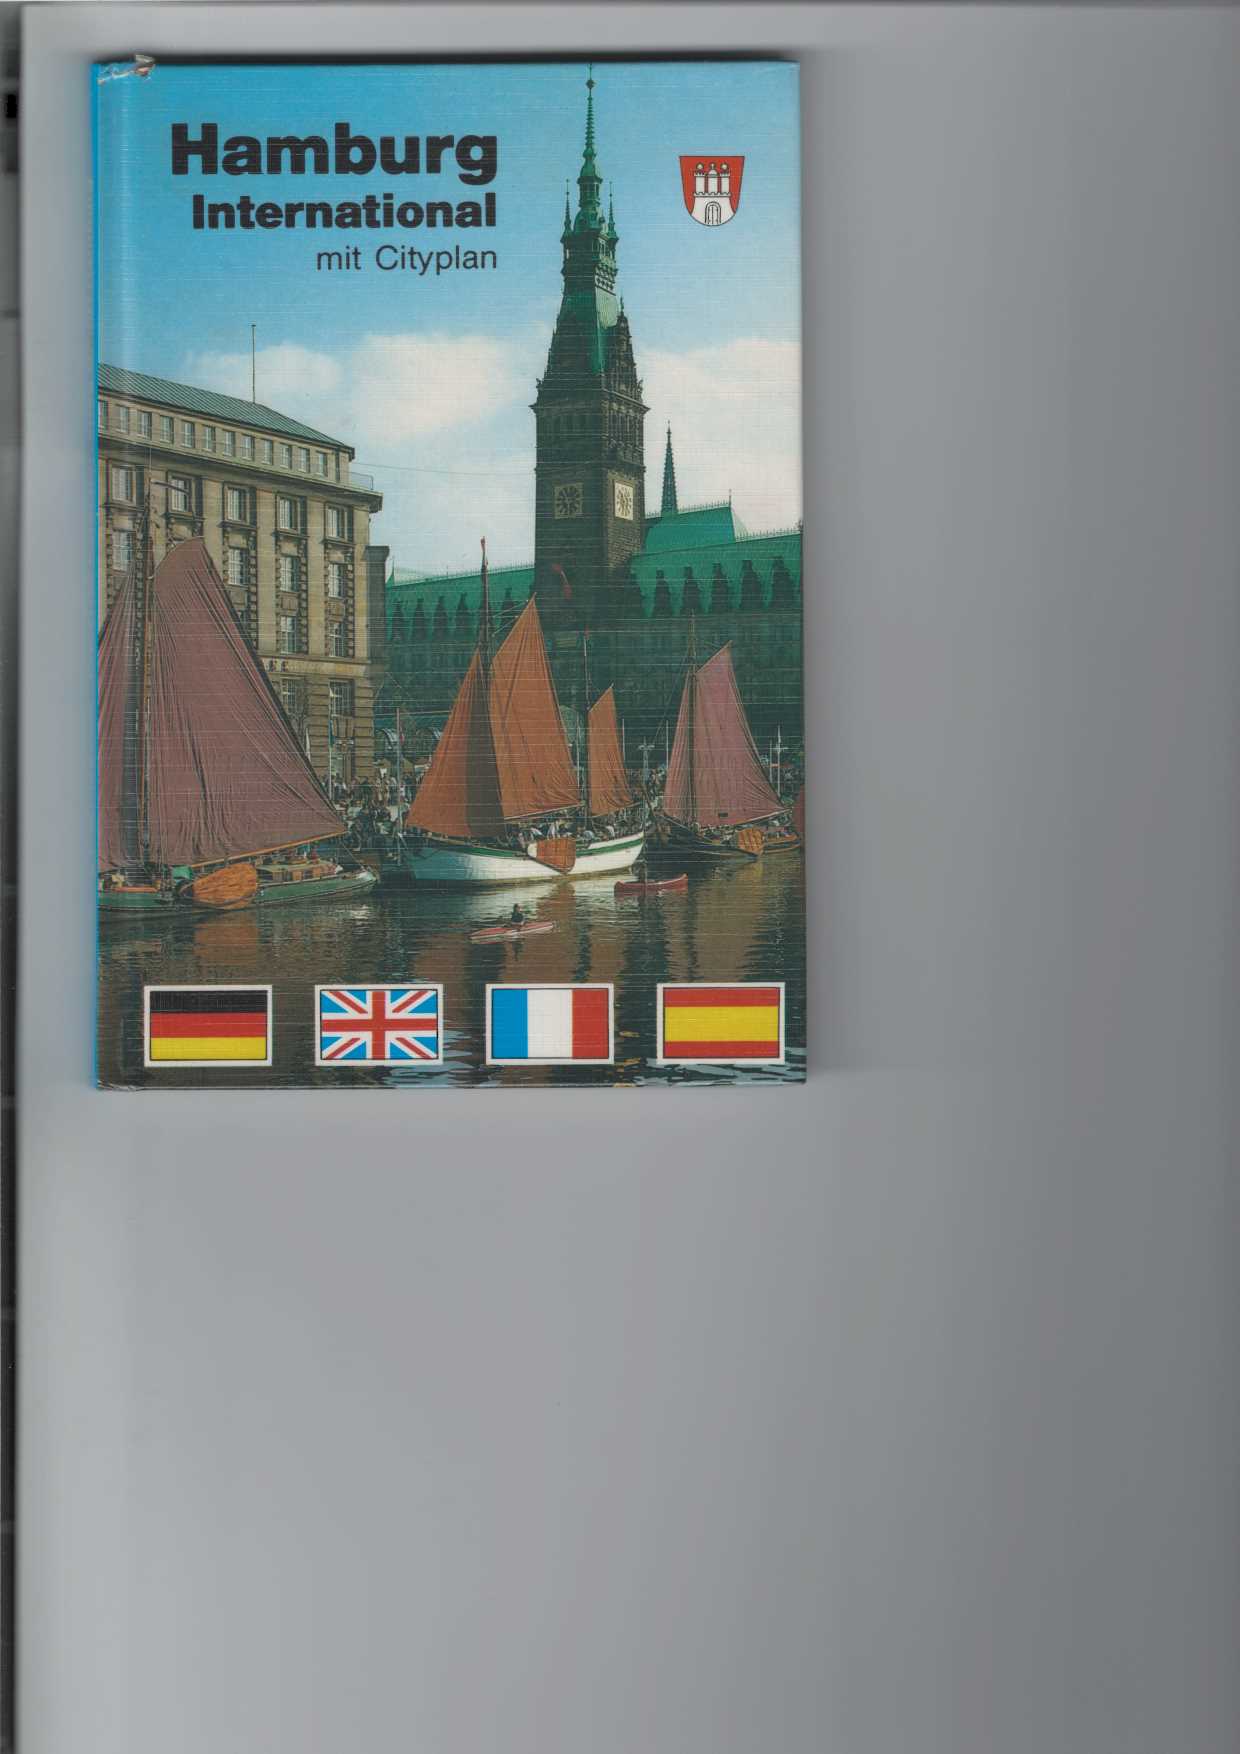 Hamburg International mit Cityplan. Farbiger Bildband. Viersprachig: deutsch, englisch, französisch und spanisch. 2. Aufl.,